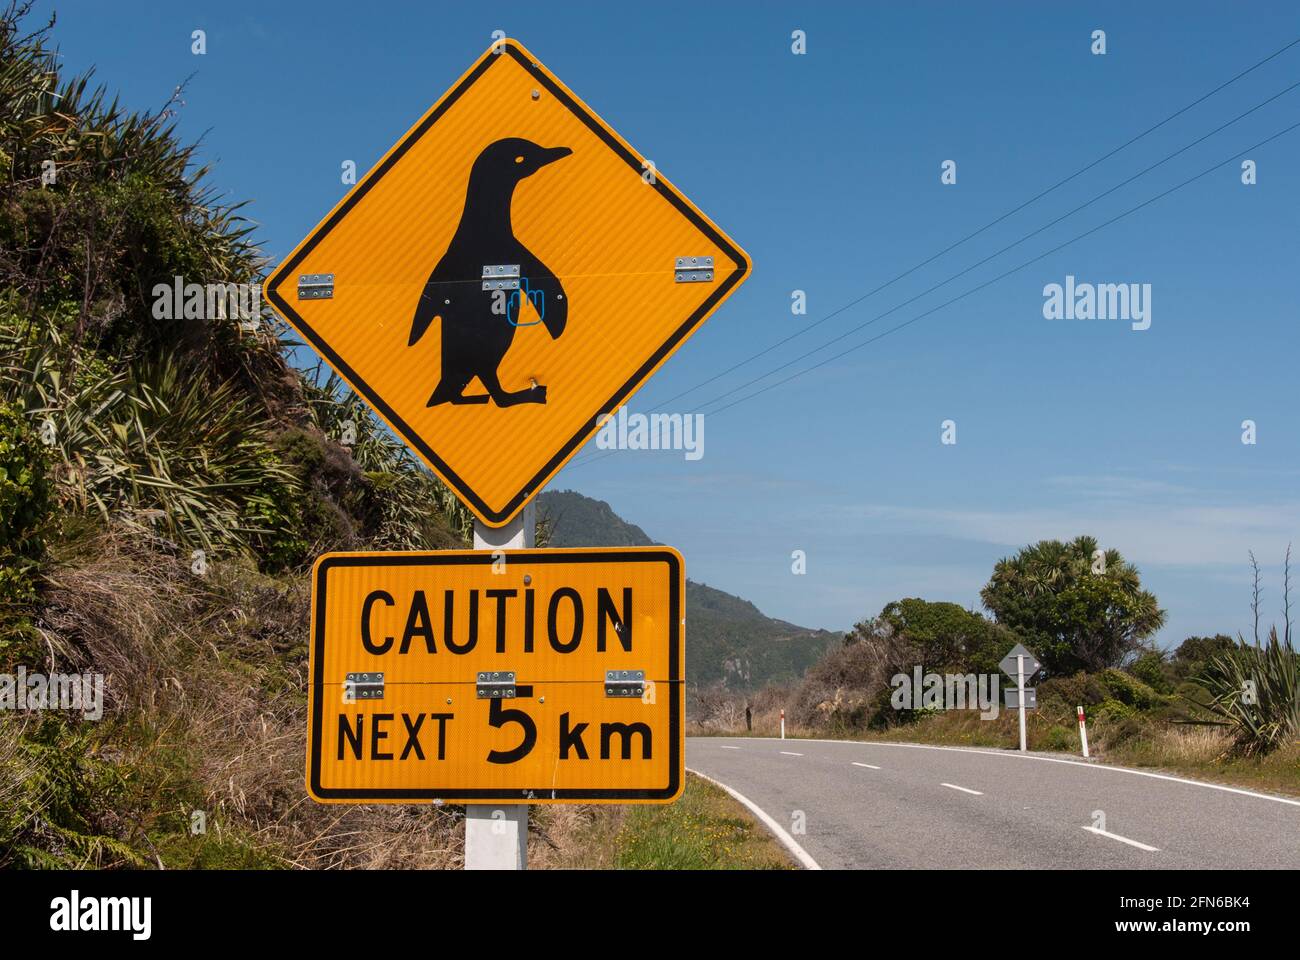 Achtung Pinguine kreuzen auf den nächsten 5 Kilometern! Warnschild an einer Küstenstraße im Westen der neuseeländischen Südinsel. - Caution penguins crossing next 5 km! Warning sign at a coastal road on the West coast of the South Island of New Zealand. Stock Photo